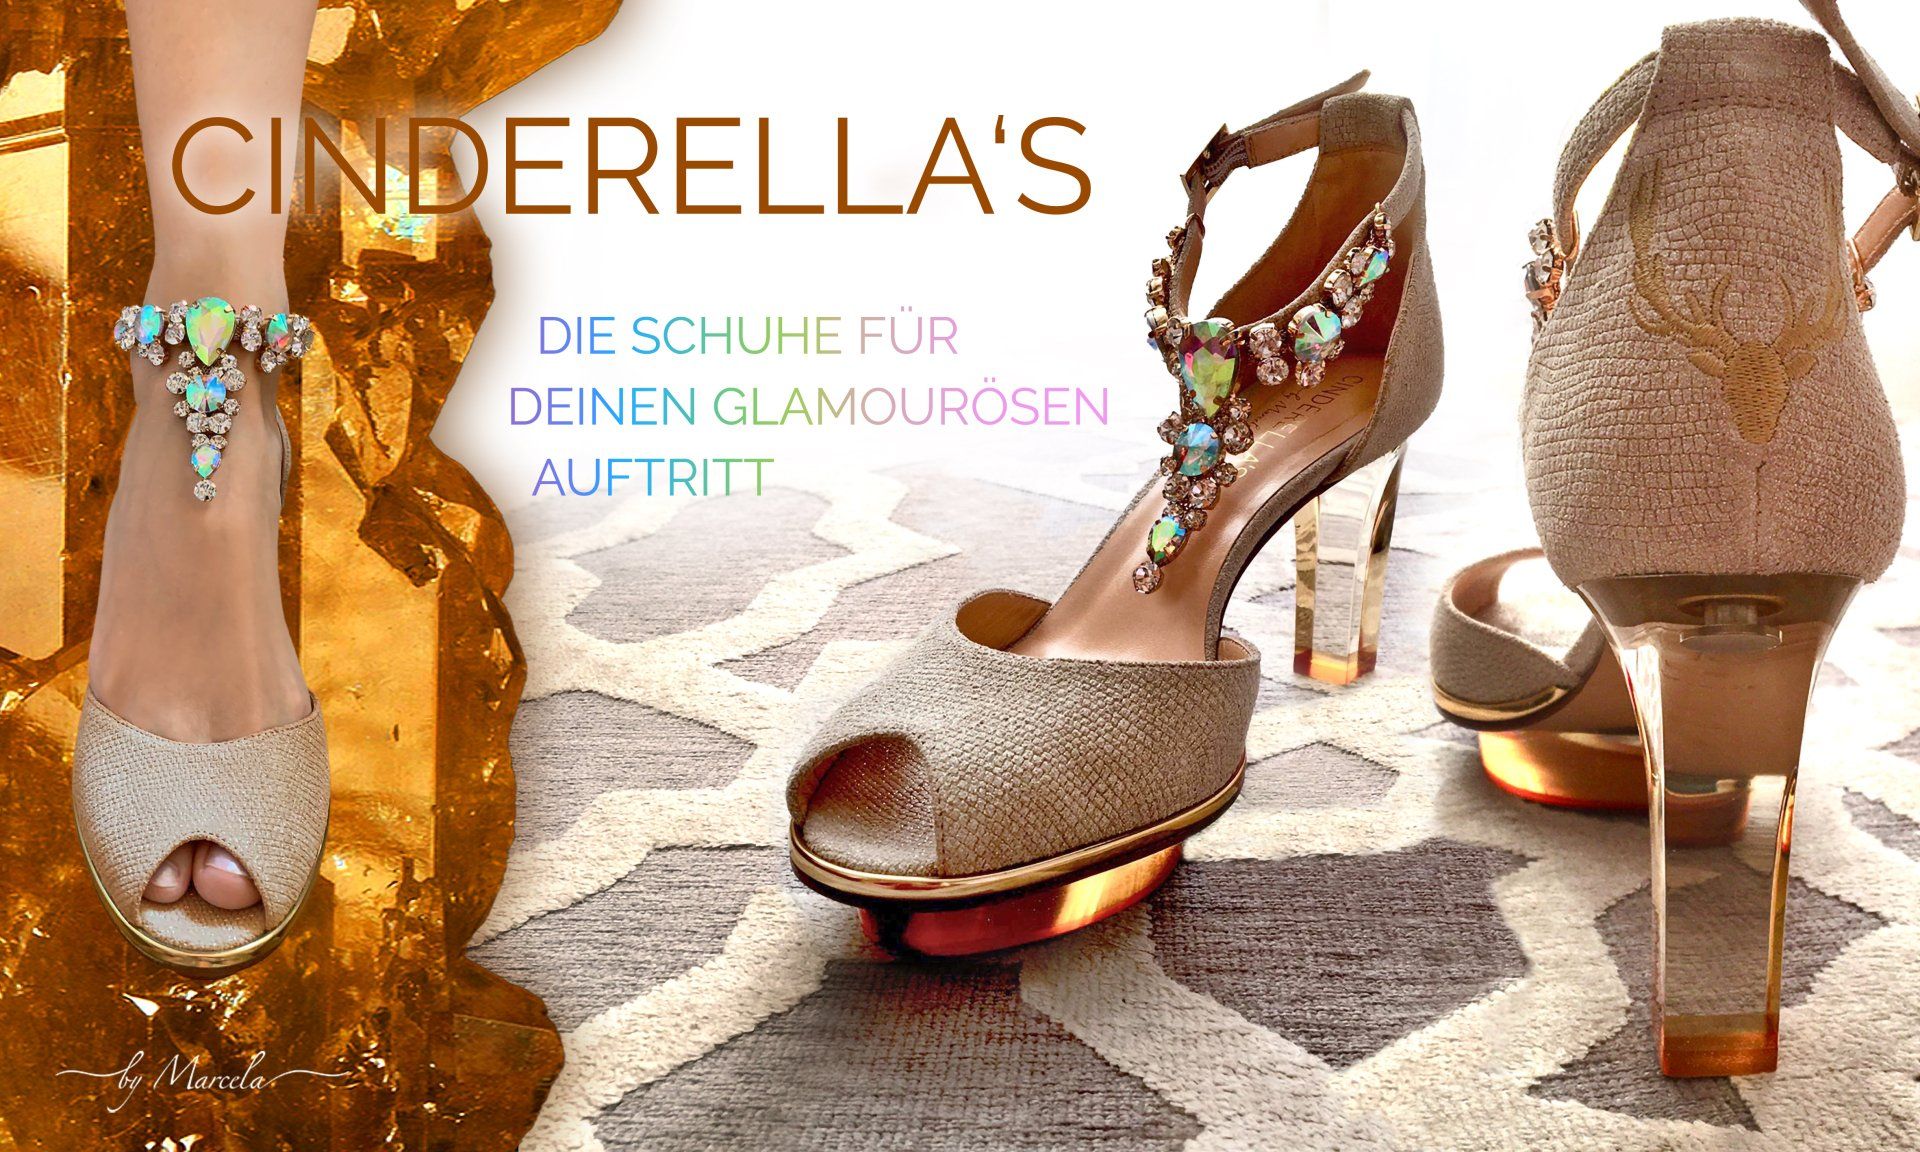 Cinderellas by Marcela, Cinderellas Schuhe, Creme gold Cinderellas Dirndl Schuhe für Hochzeit mit transparentem high heel namens Goldis